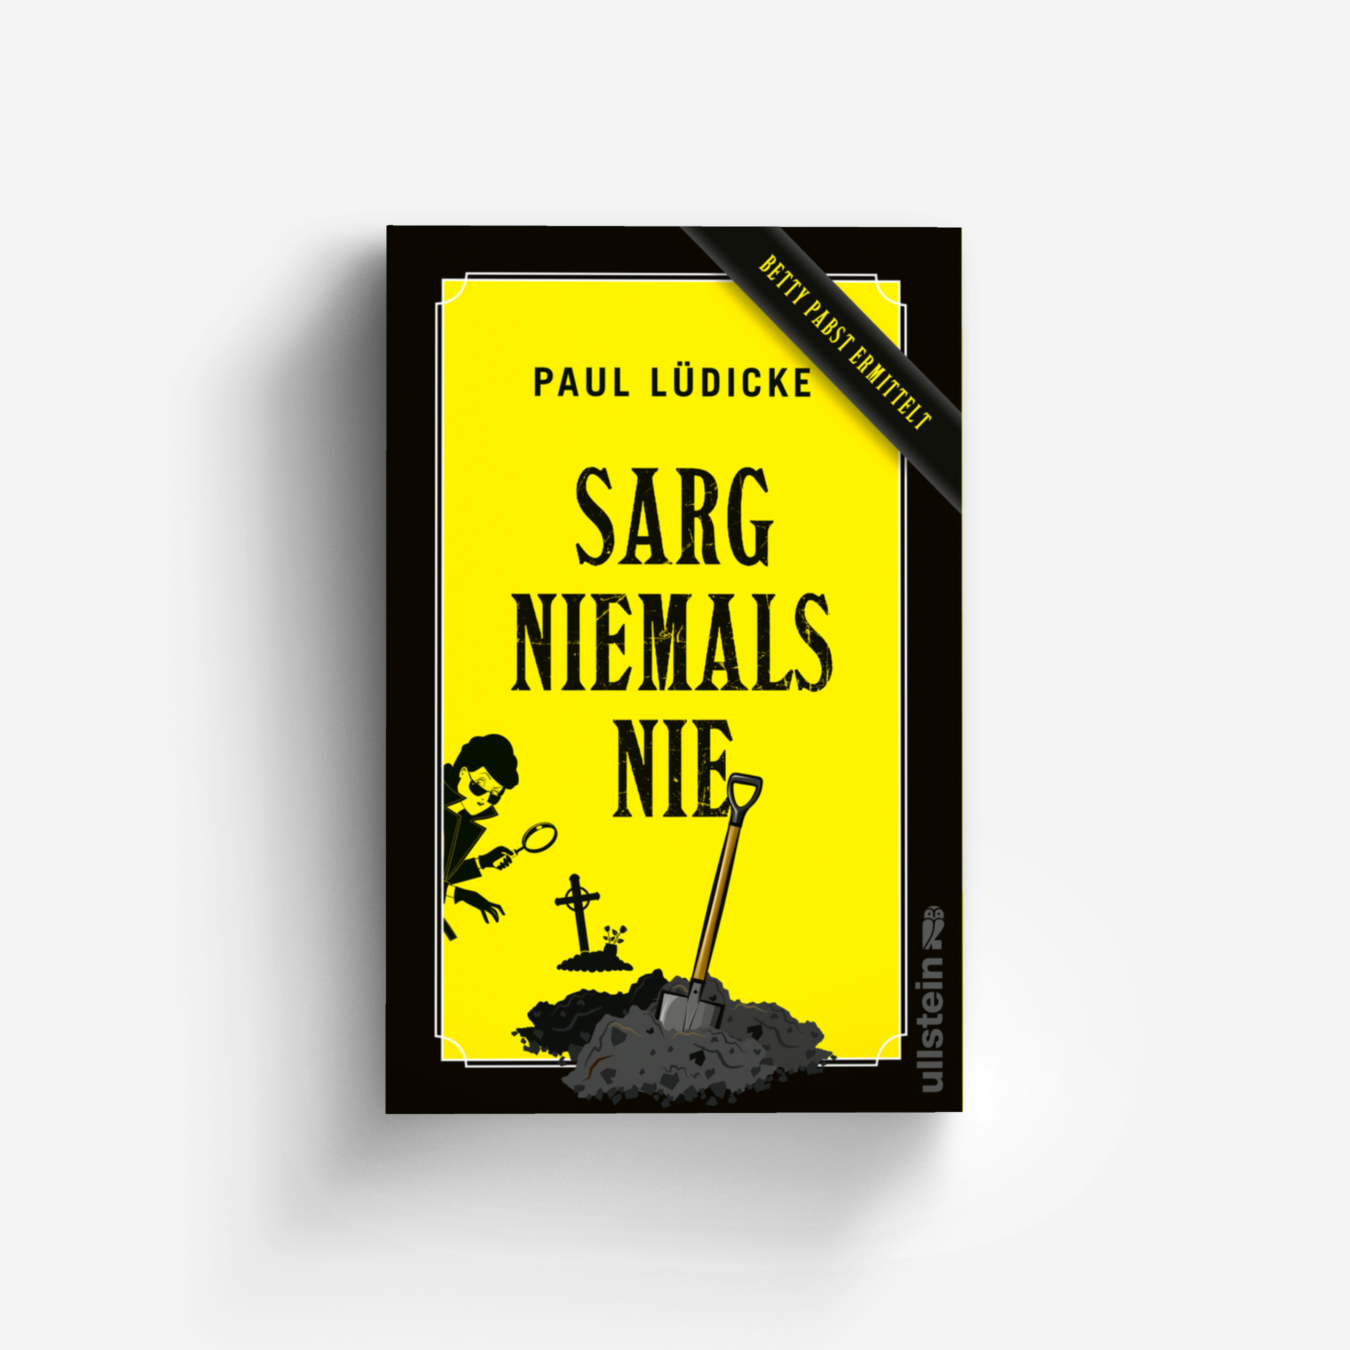 Buchcover von Sarg niemals nie (Betty-Pabst-Serie 1)